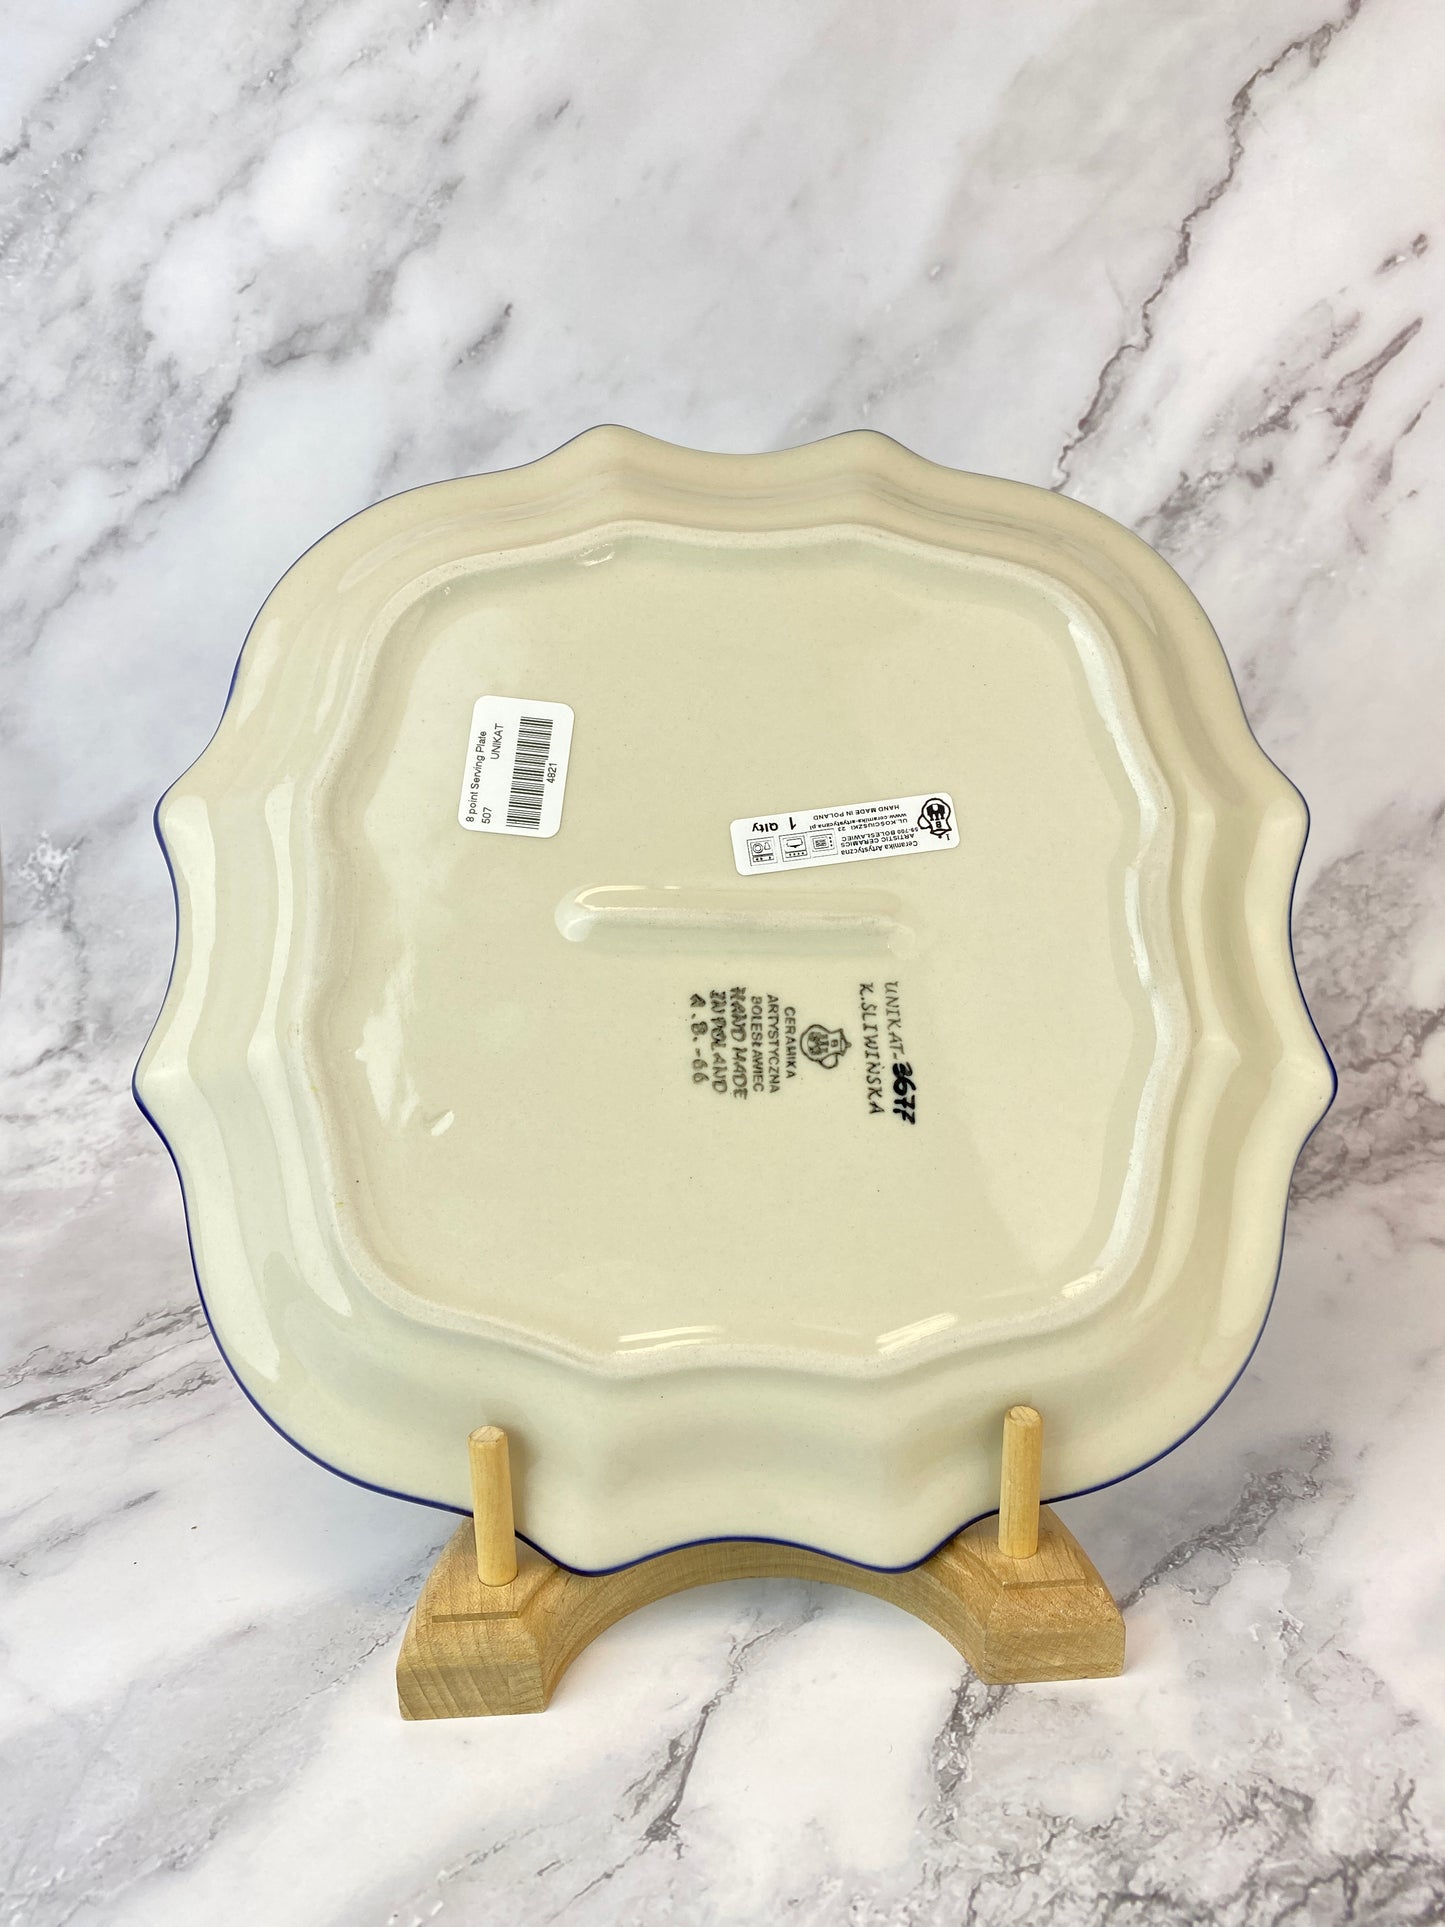 8 Pointed Unikat Platter/ Plate - Shape 507 - Pattern U3677